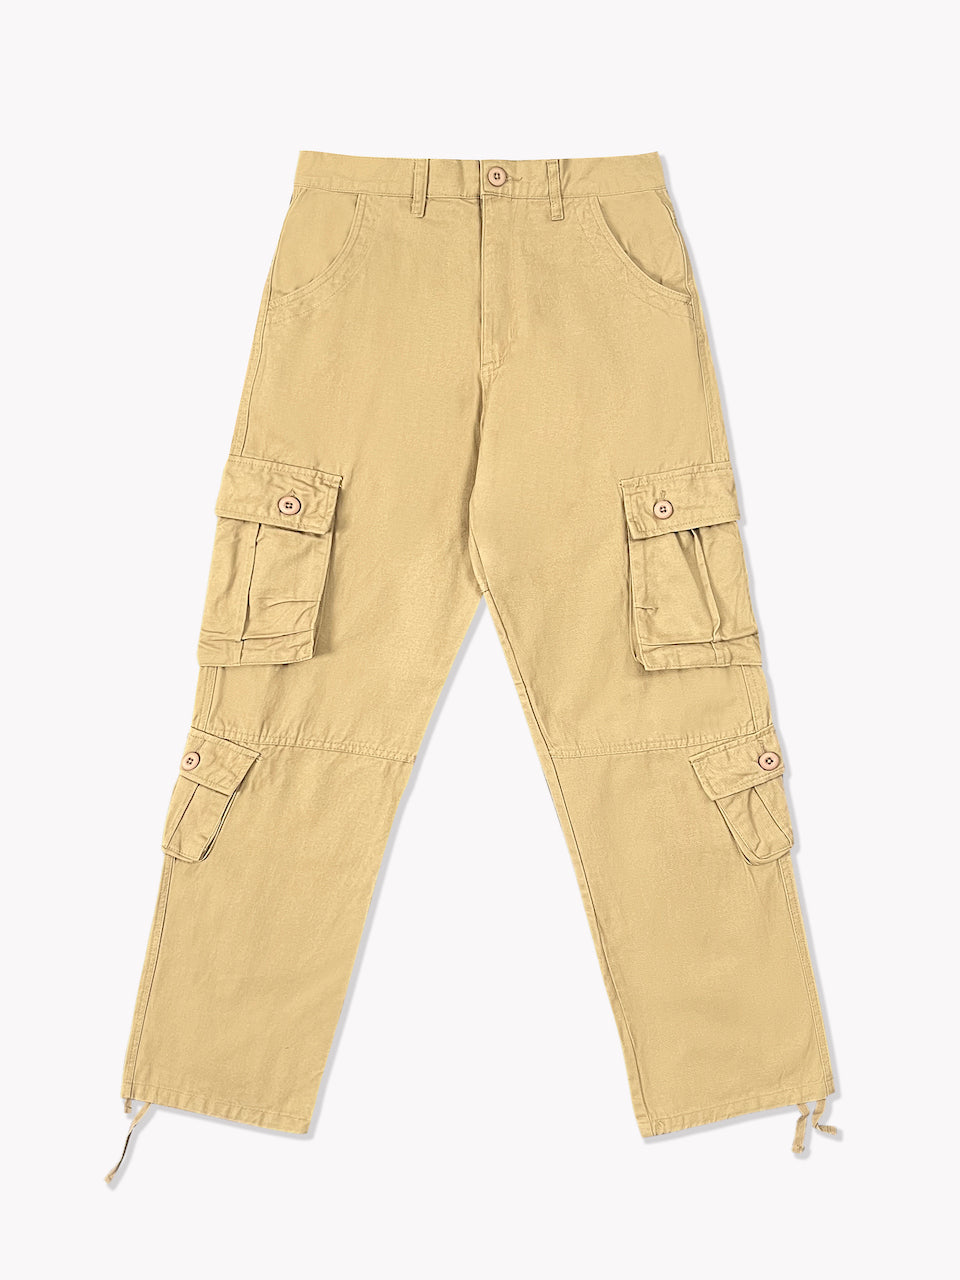 Stylish 8 Pocket Cargo Pants For Comfort  Alibabacom